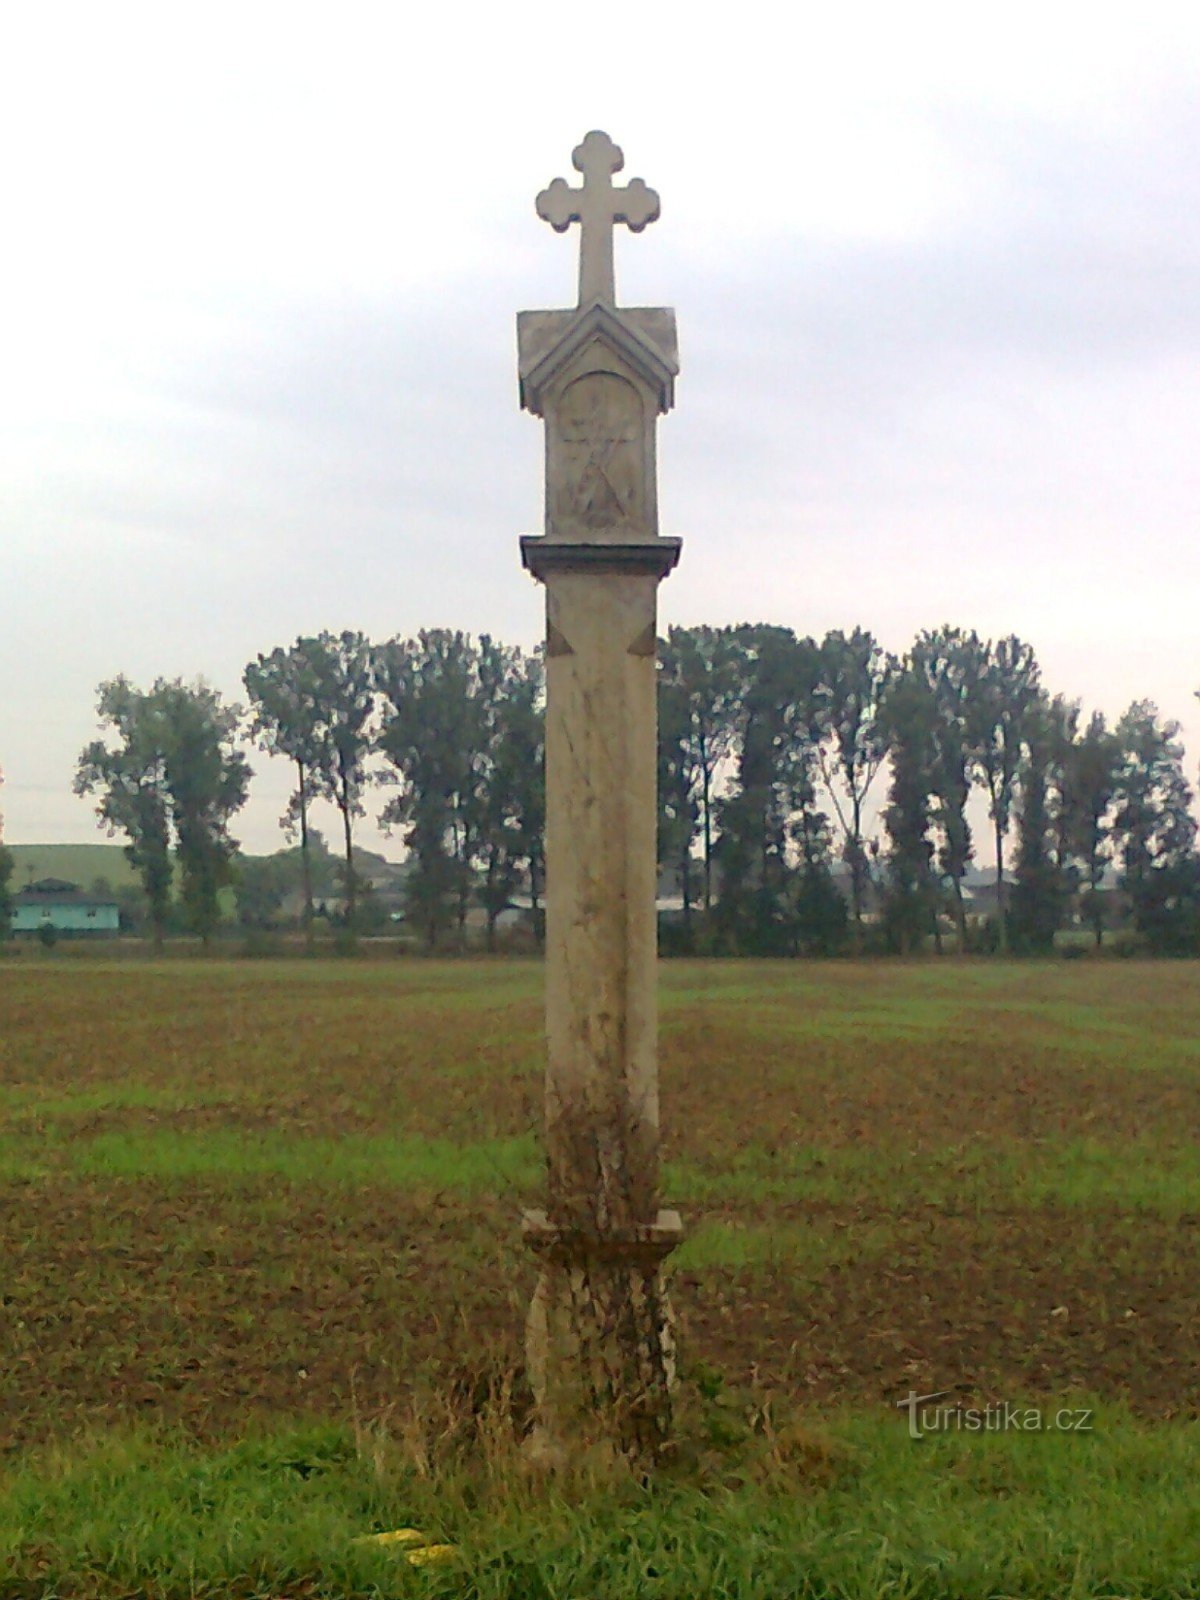 Chinul lui Dumnezeu situat în câmpul din spatele lui Úsov în direcția Stavenice